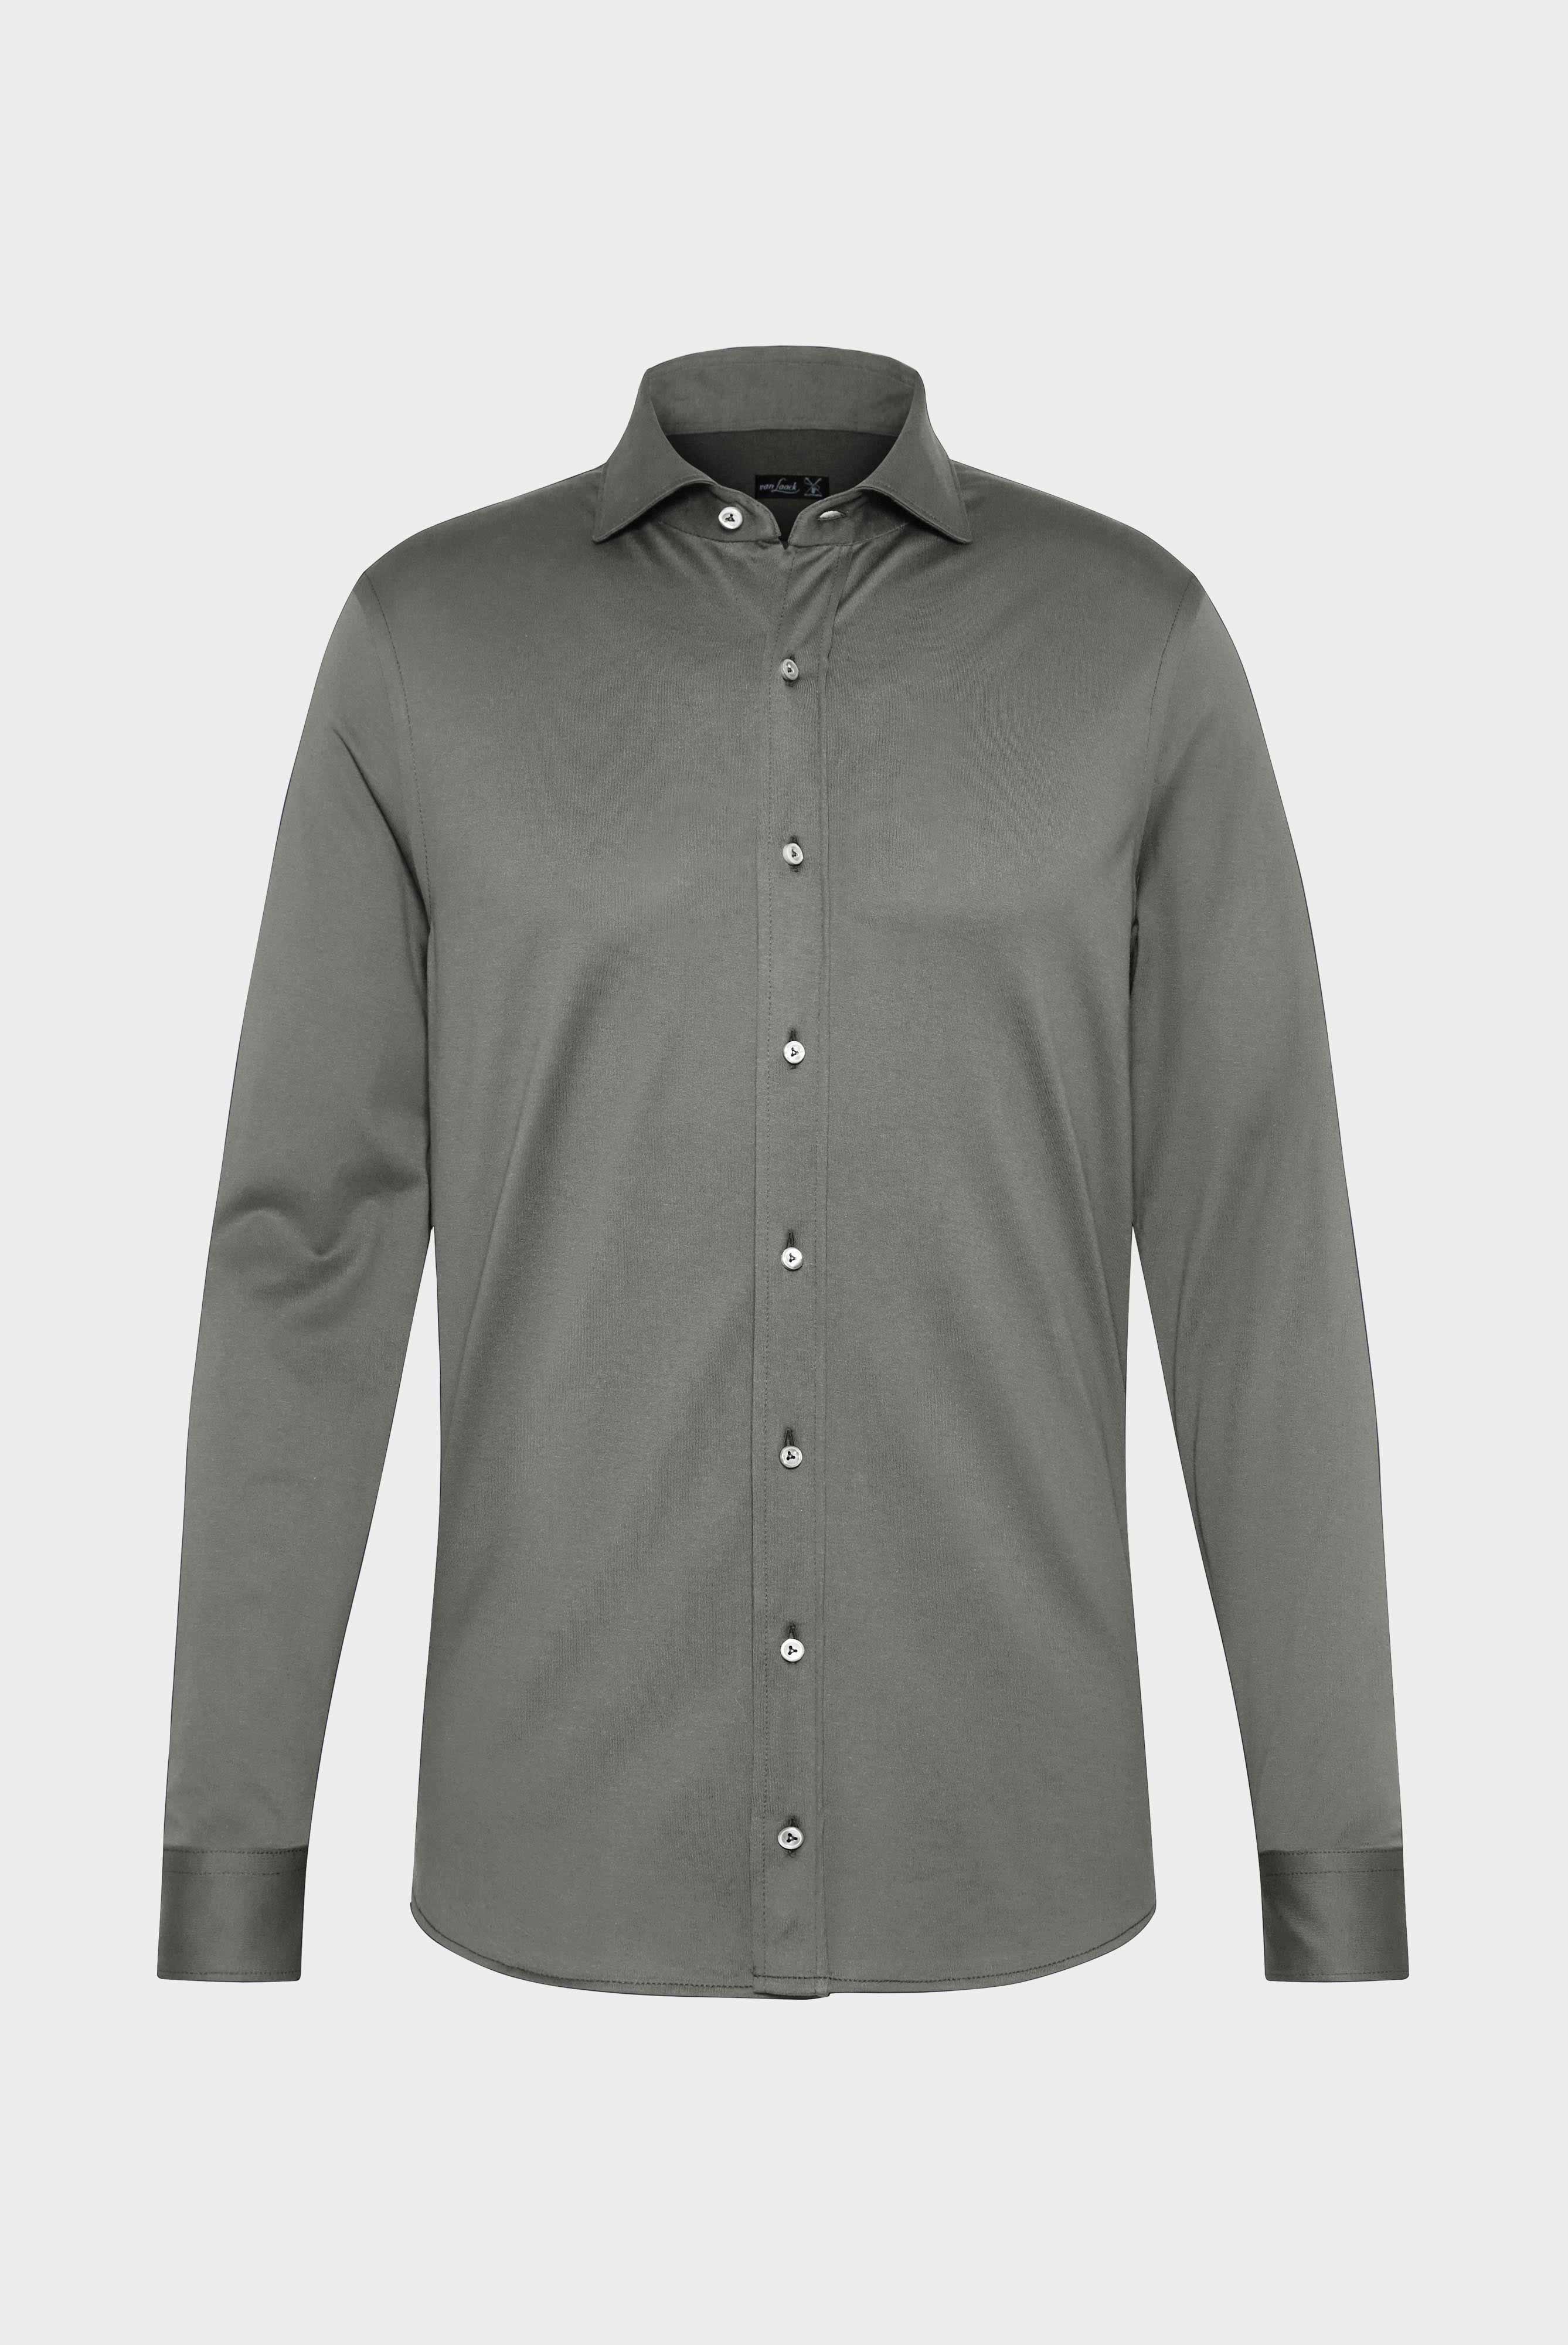 Jersey Hemden+Hemd aus langstapeliger Baumwolle+20.1651.UC.Z20044.960.L